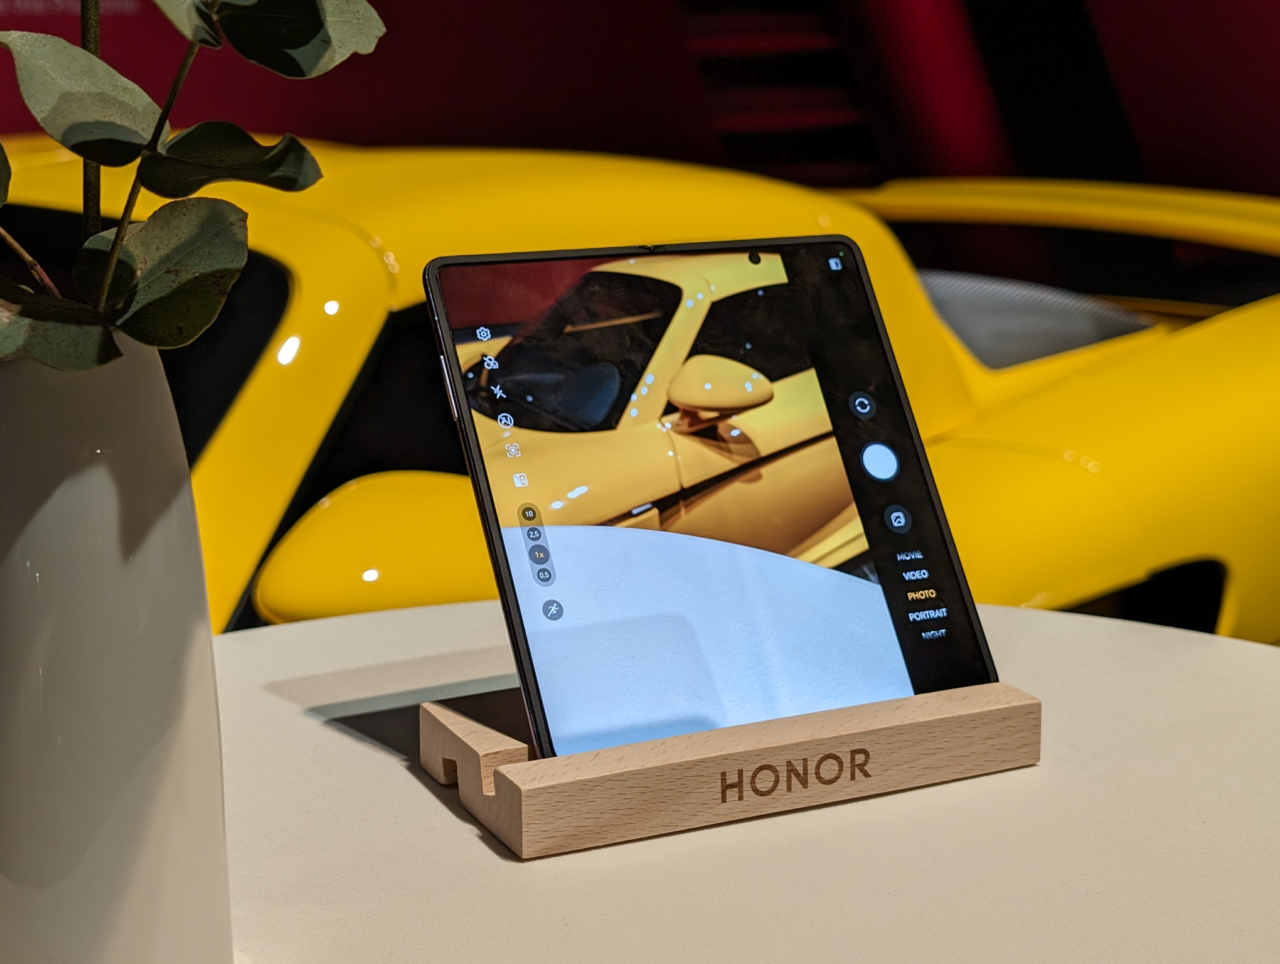 Przenośny tablet marki HONOR stoi na drewnianym stojaku, a na jego ekranie wyświetla się obraz żółtego samochodu sportowego; w tle widoczna część doniczki z rośliną.